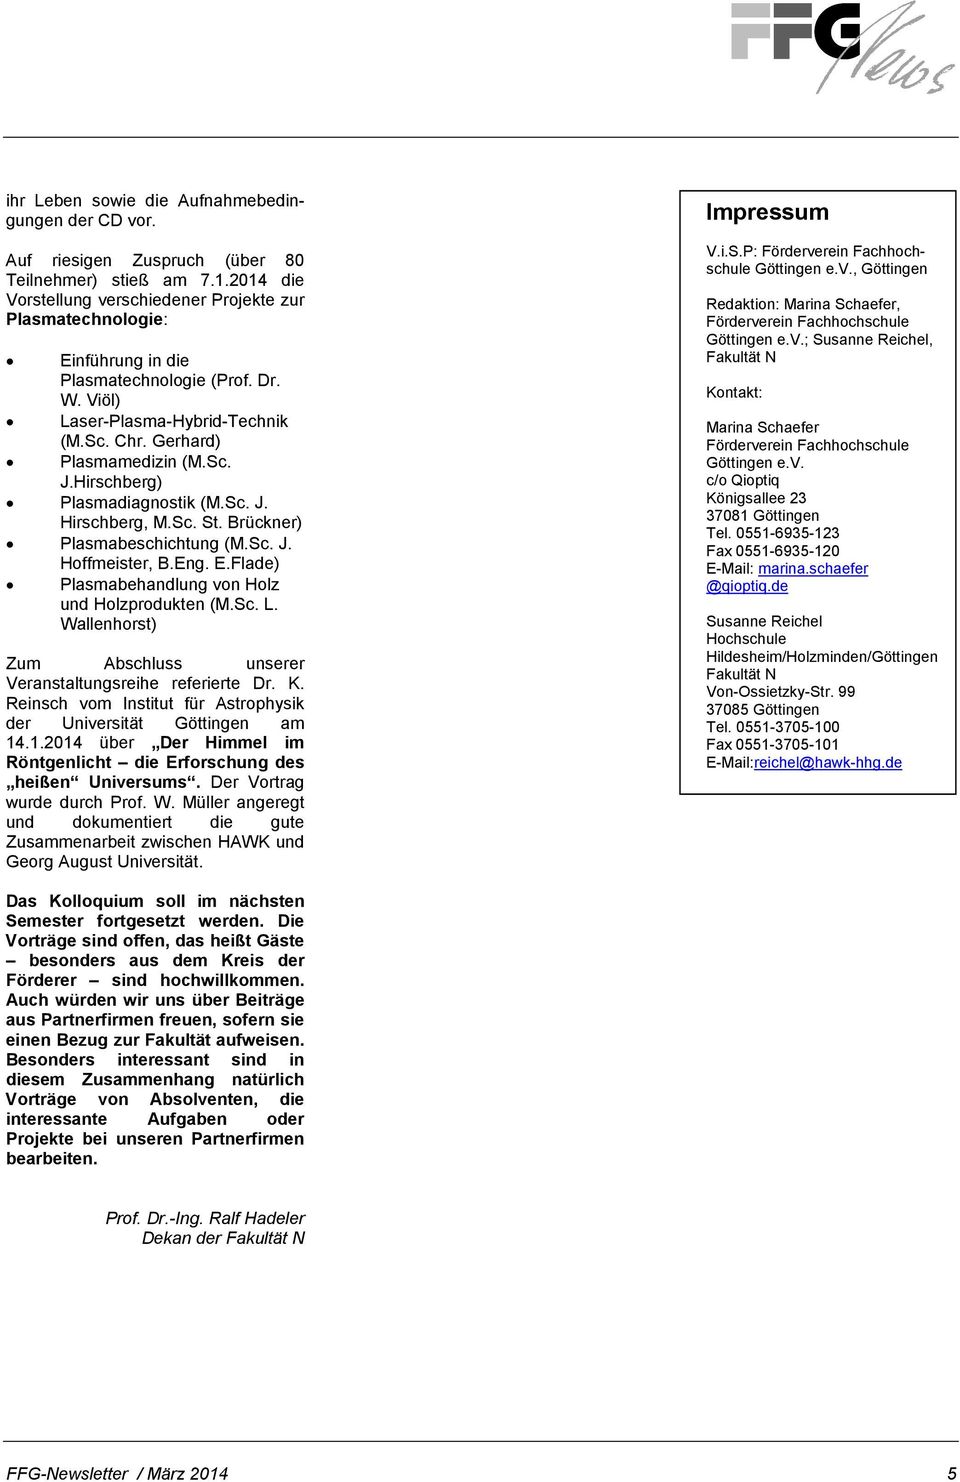 Hirschberg) Plasmadiagnostik (M.Sc. J. Hirschberg, M.Sc. St. Brückner) Plasmabeschichtung (M.Sc. J. Hoffmeister, B.Eng. E.Flade) Plasmabehandlung von Holz und Holzprodukten (M.Sc. L.